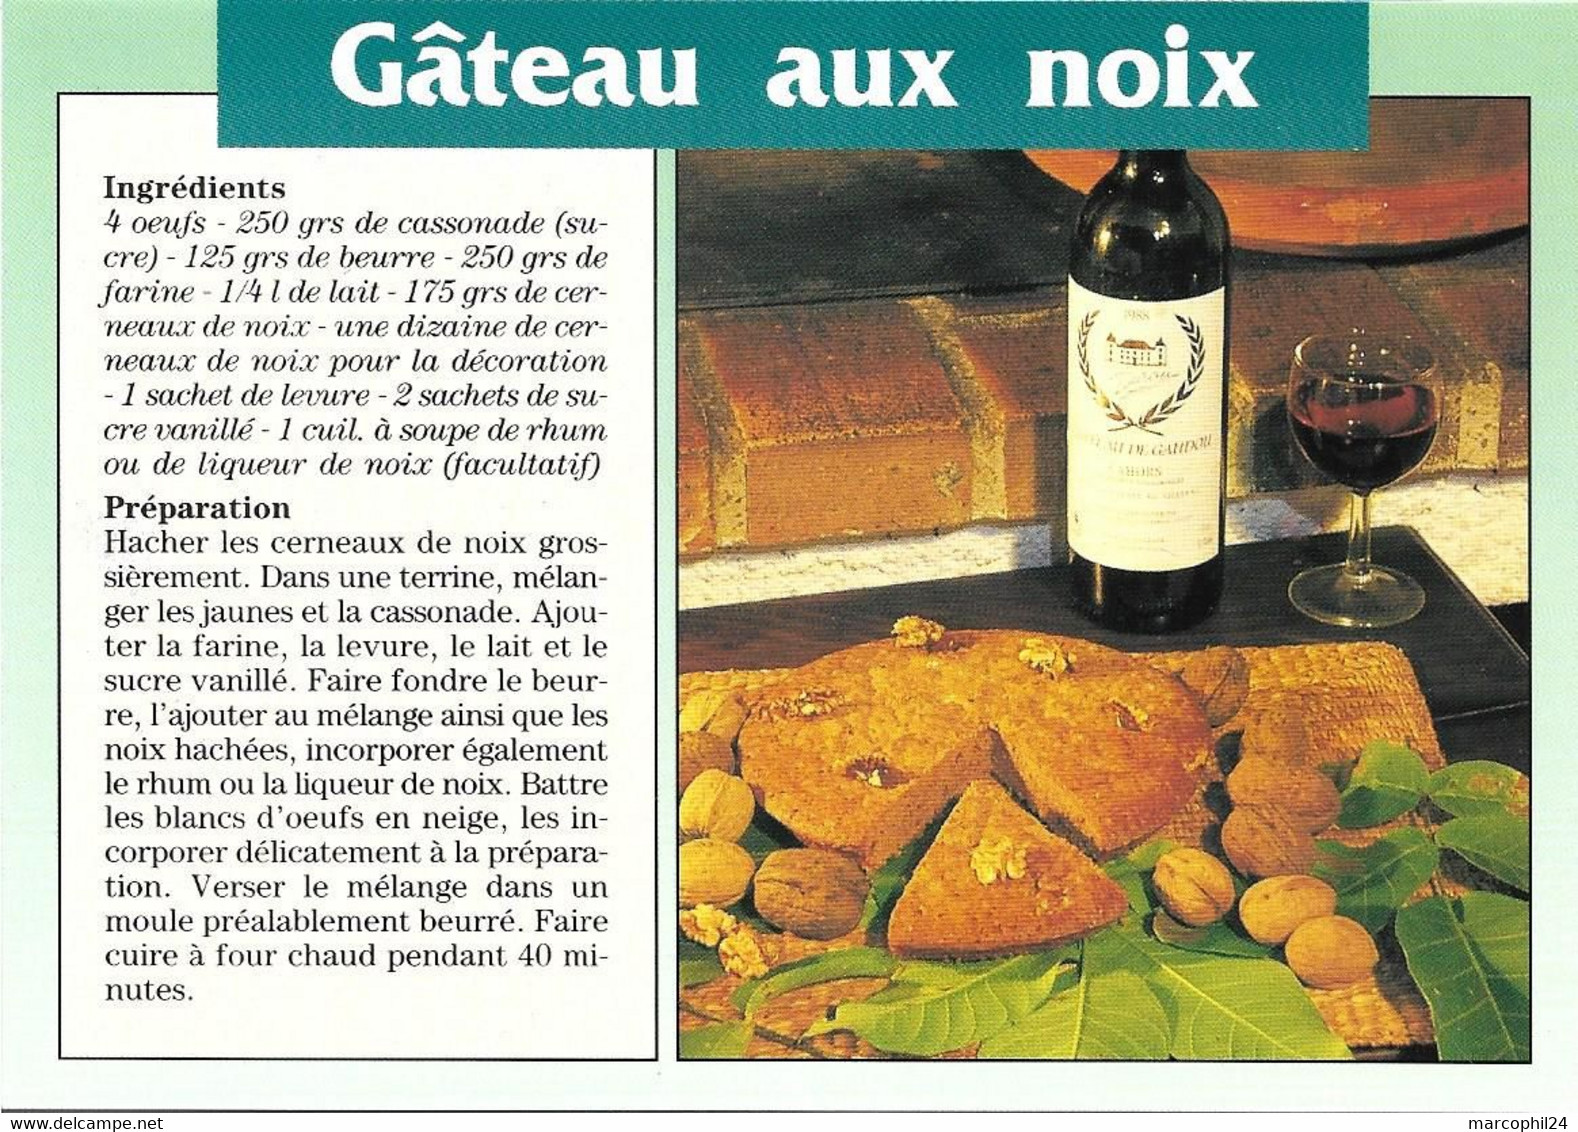 TRADITIONS + Carte Postale Neuve : RECETTE - GATEAU AUX NOIX - Vin De Cahors + AS DE COEUR 19 012 - Recettes (cuisine)